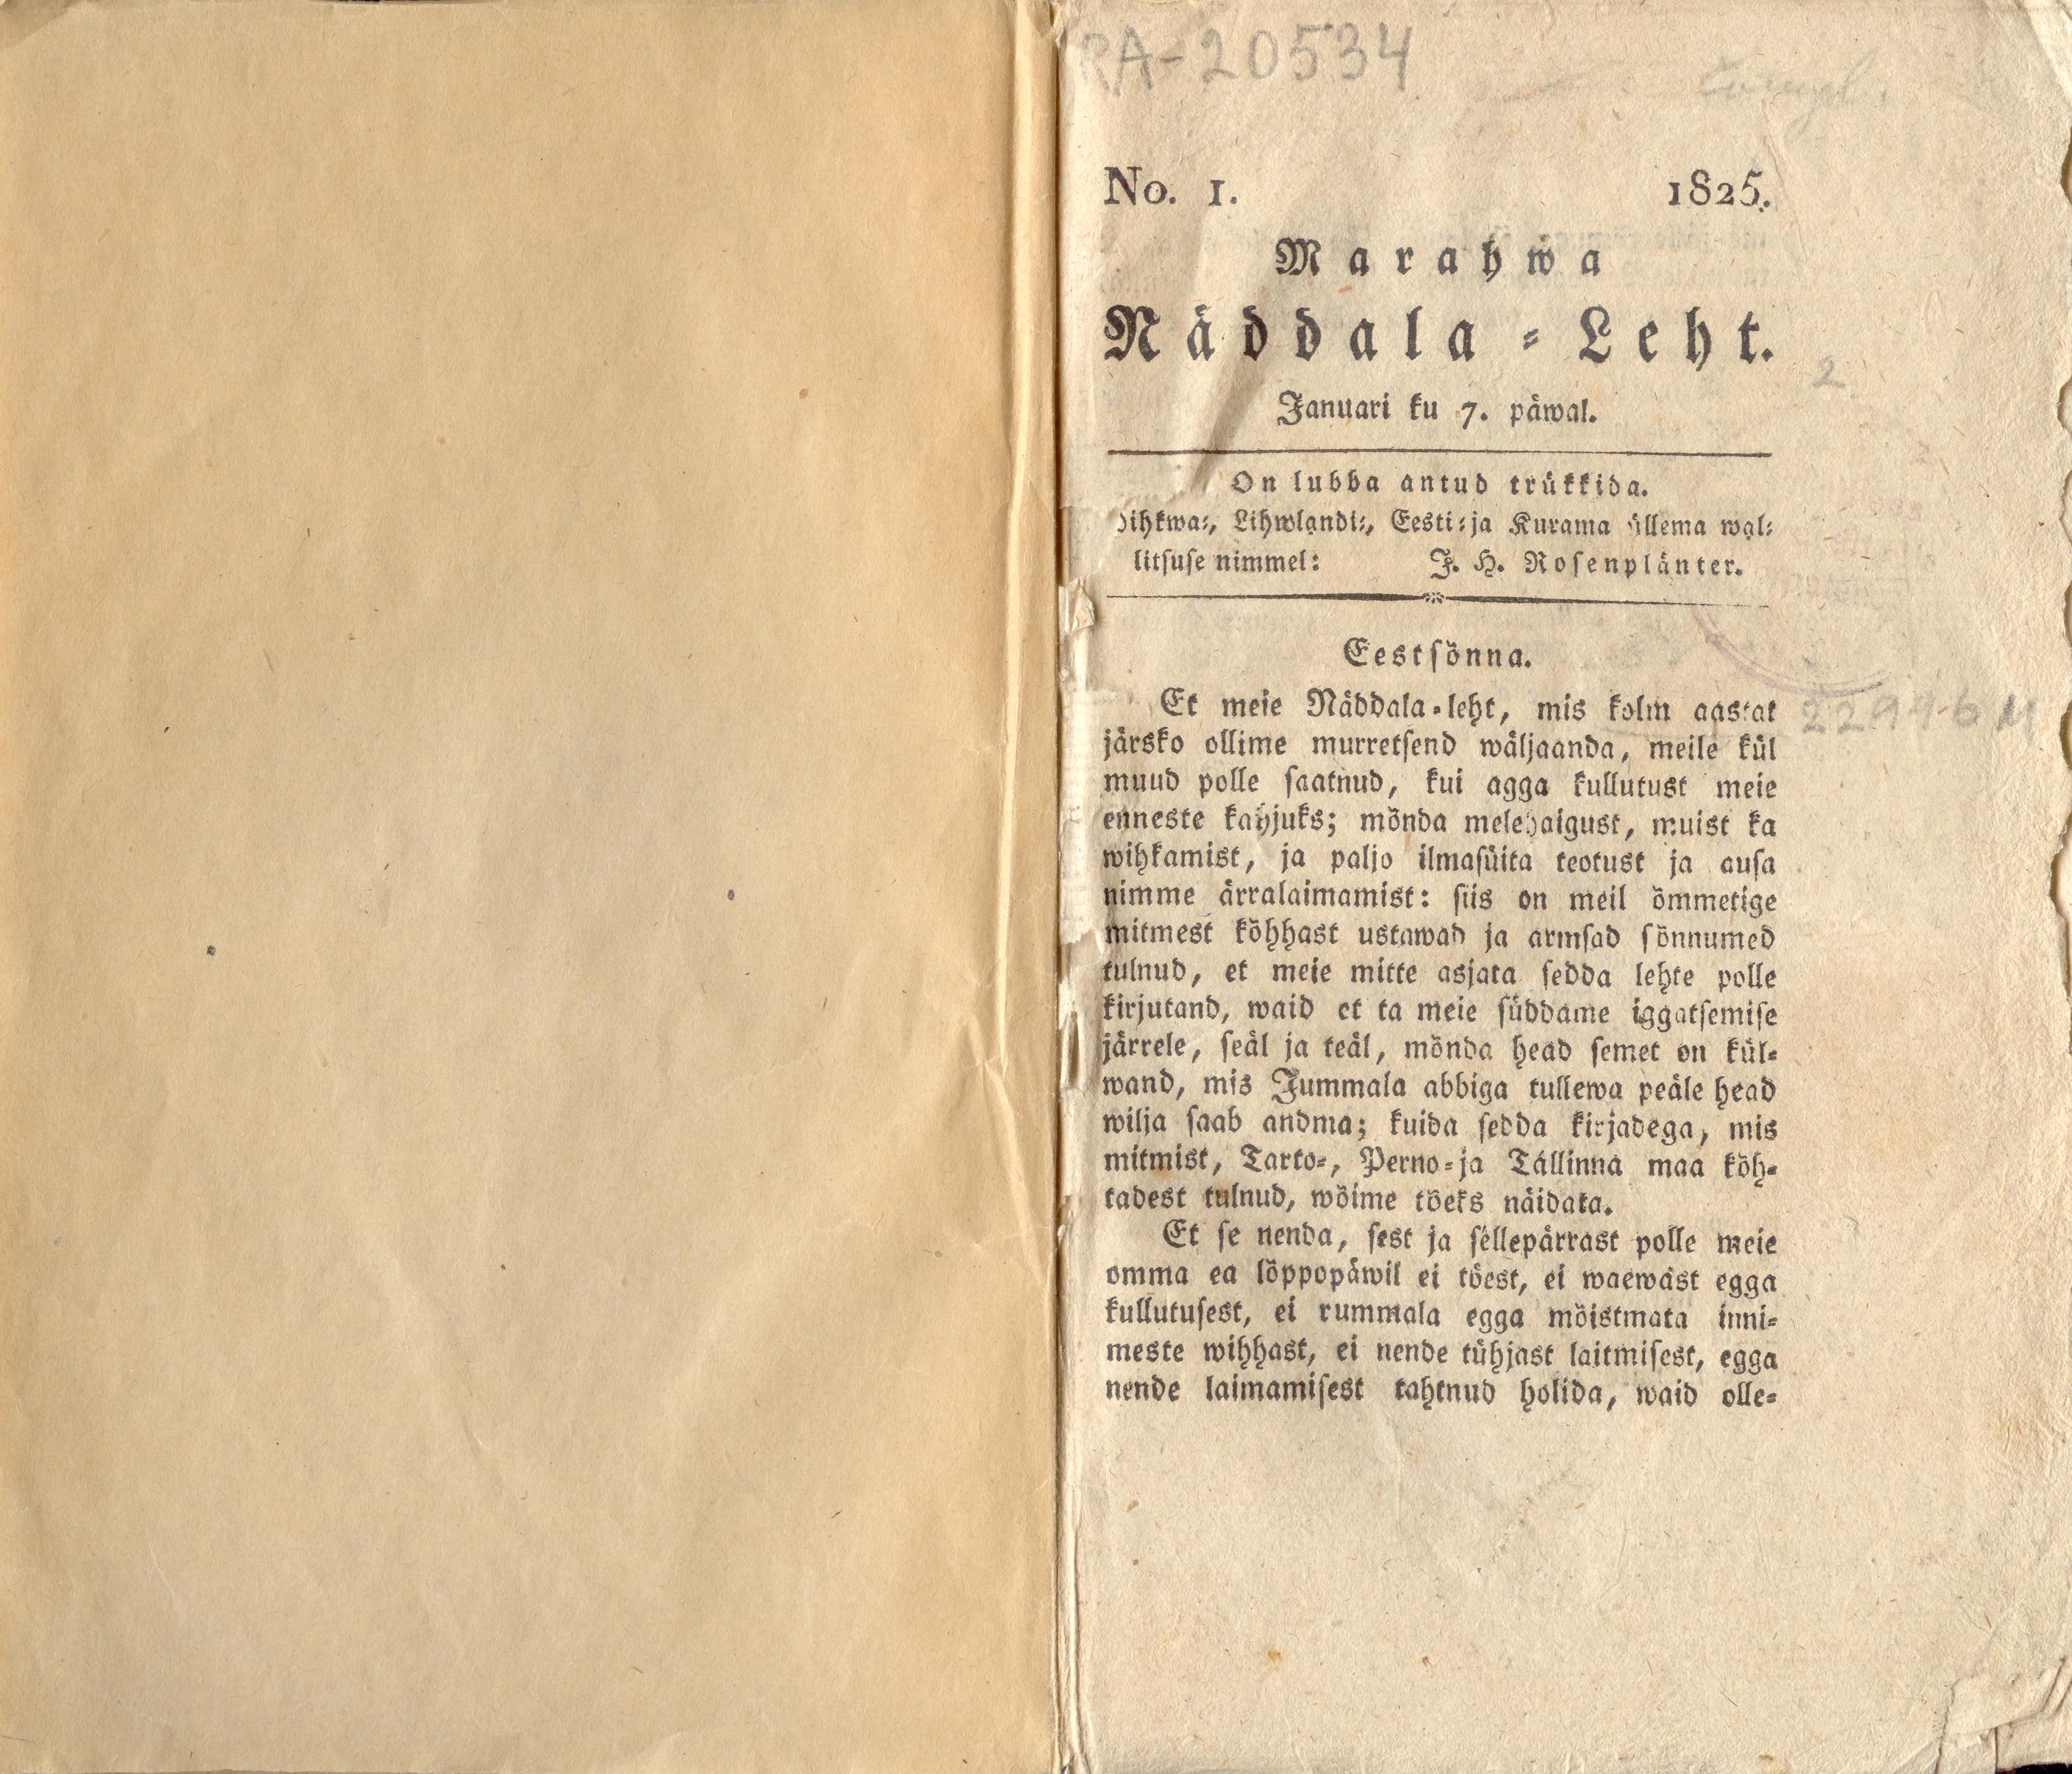 Marahwa Näddala-Leht [4] (1825) | 1. (1) Tiitelleht